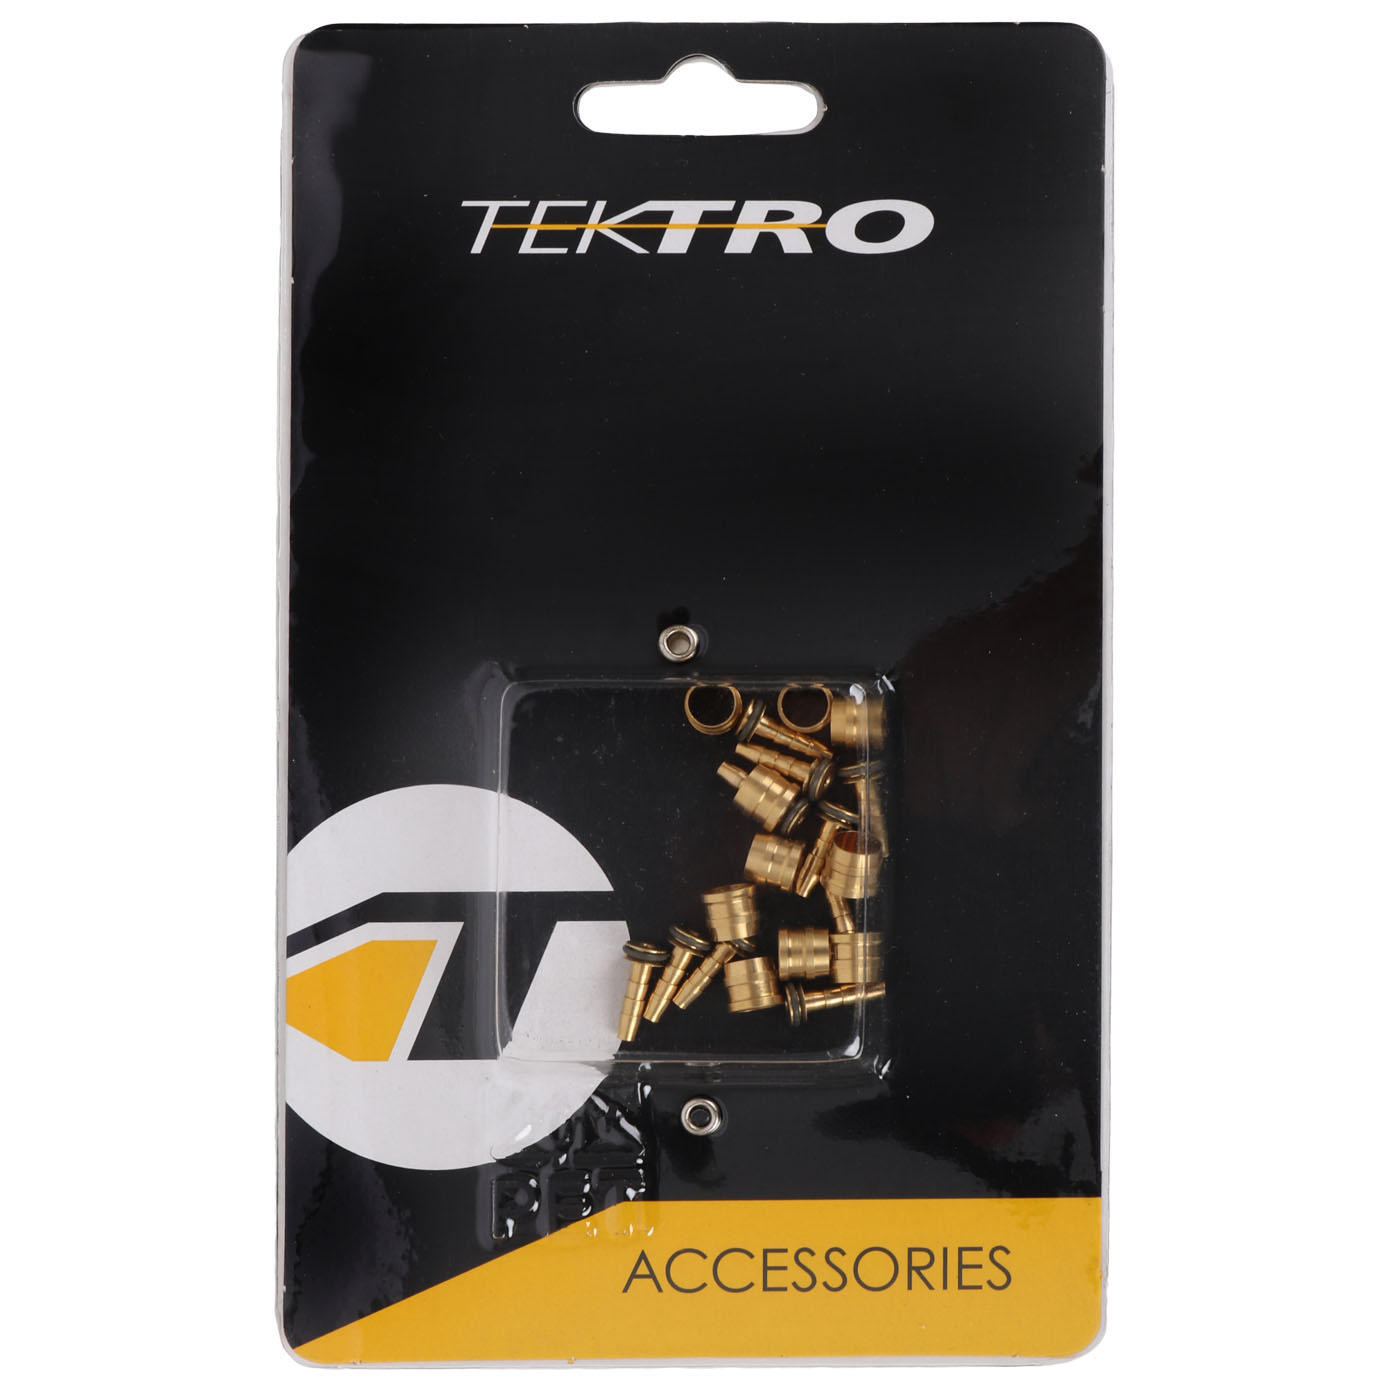 Productfoto van Tektro Hose Connection Mini Kit (Olive + Insert-Pin)